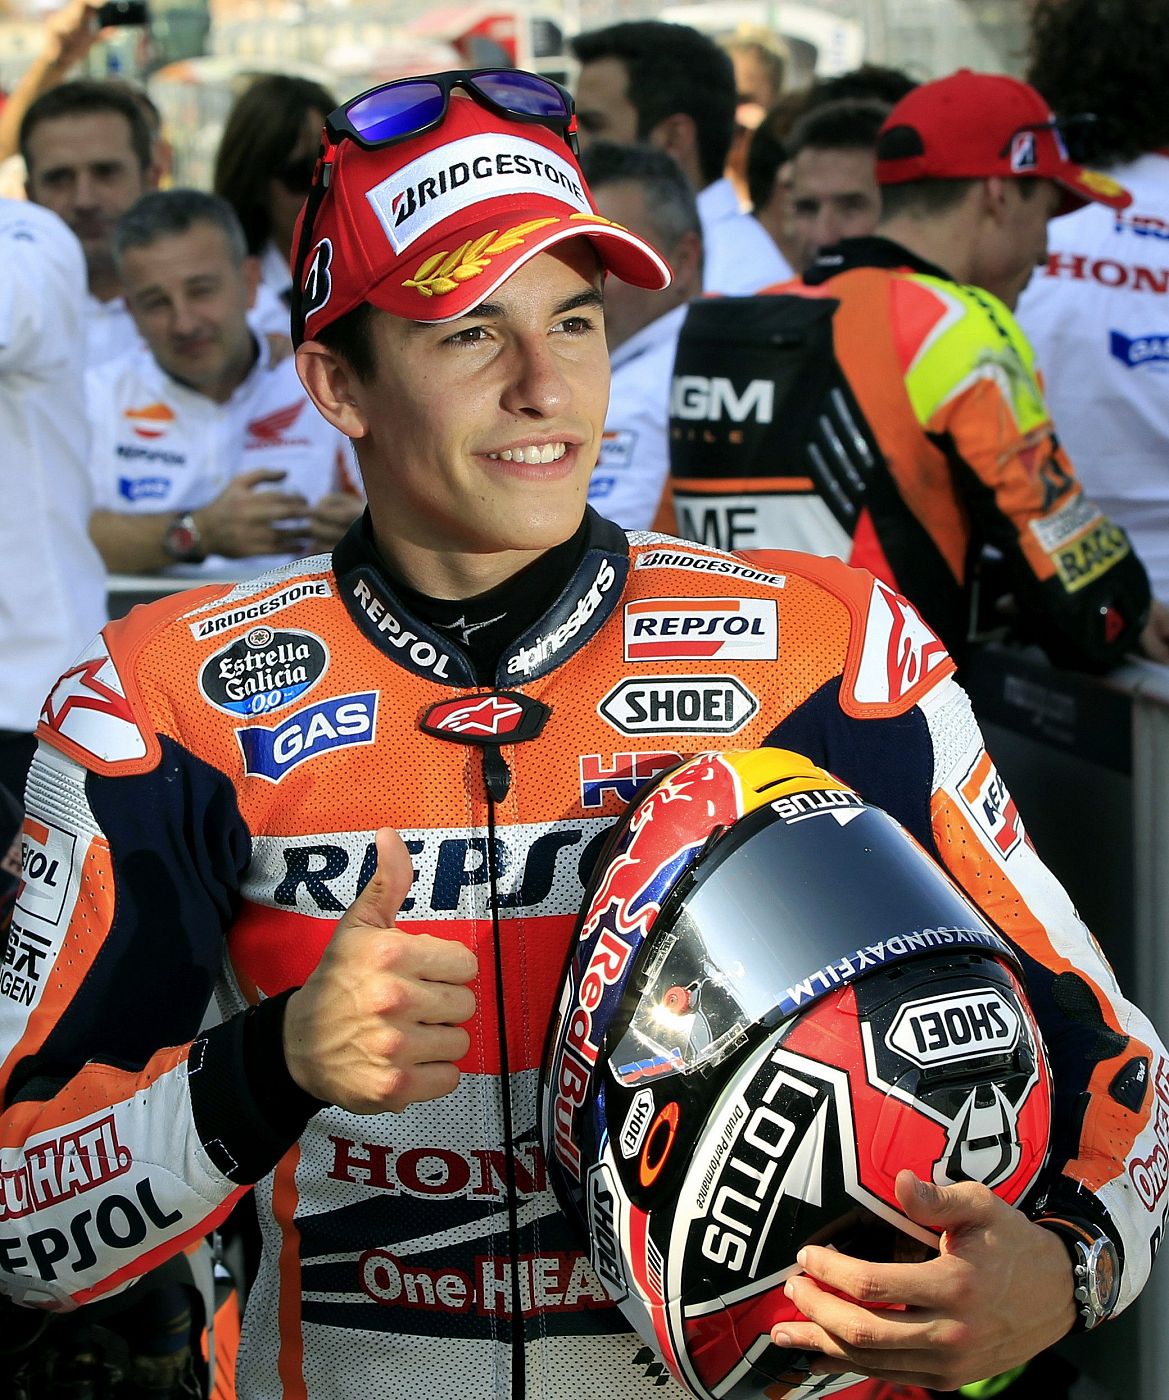 El piloto español de Moto GP, Marc Márquez